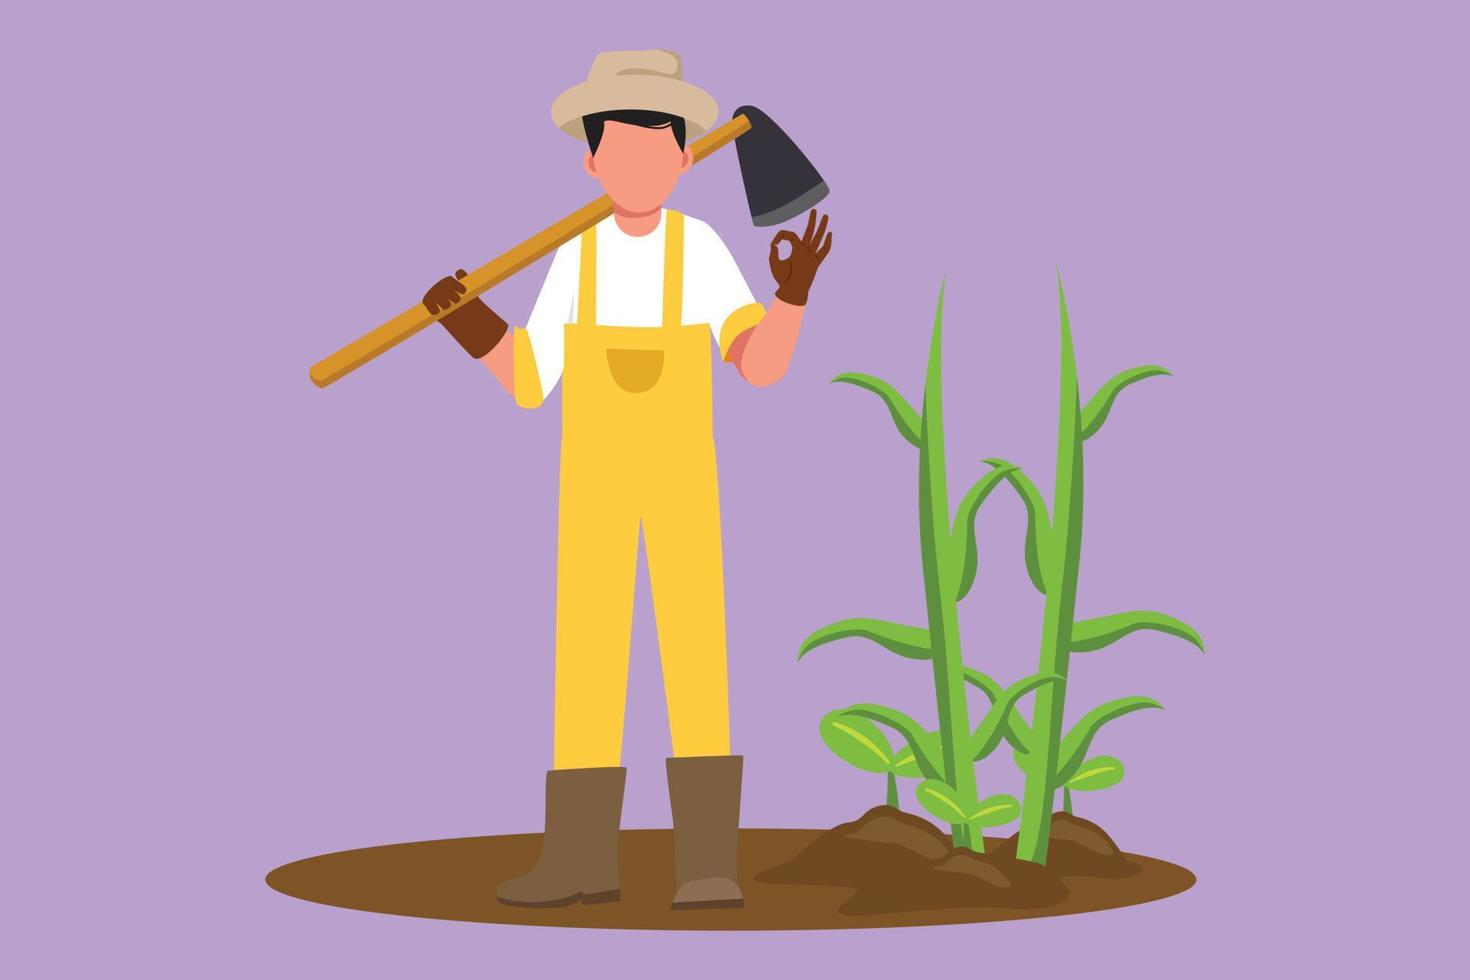 karaktär platt teckning manlig jordbrukare stående med Okej gest, bär sugrör hatt och bärande skyffel till växt beskära eller skörda på jordbruksmark. lantlig jordbruks arbetstagare. tecknad serie design vektor illustration